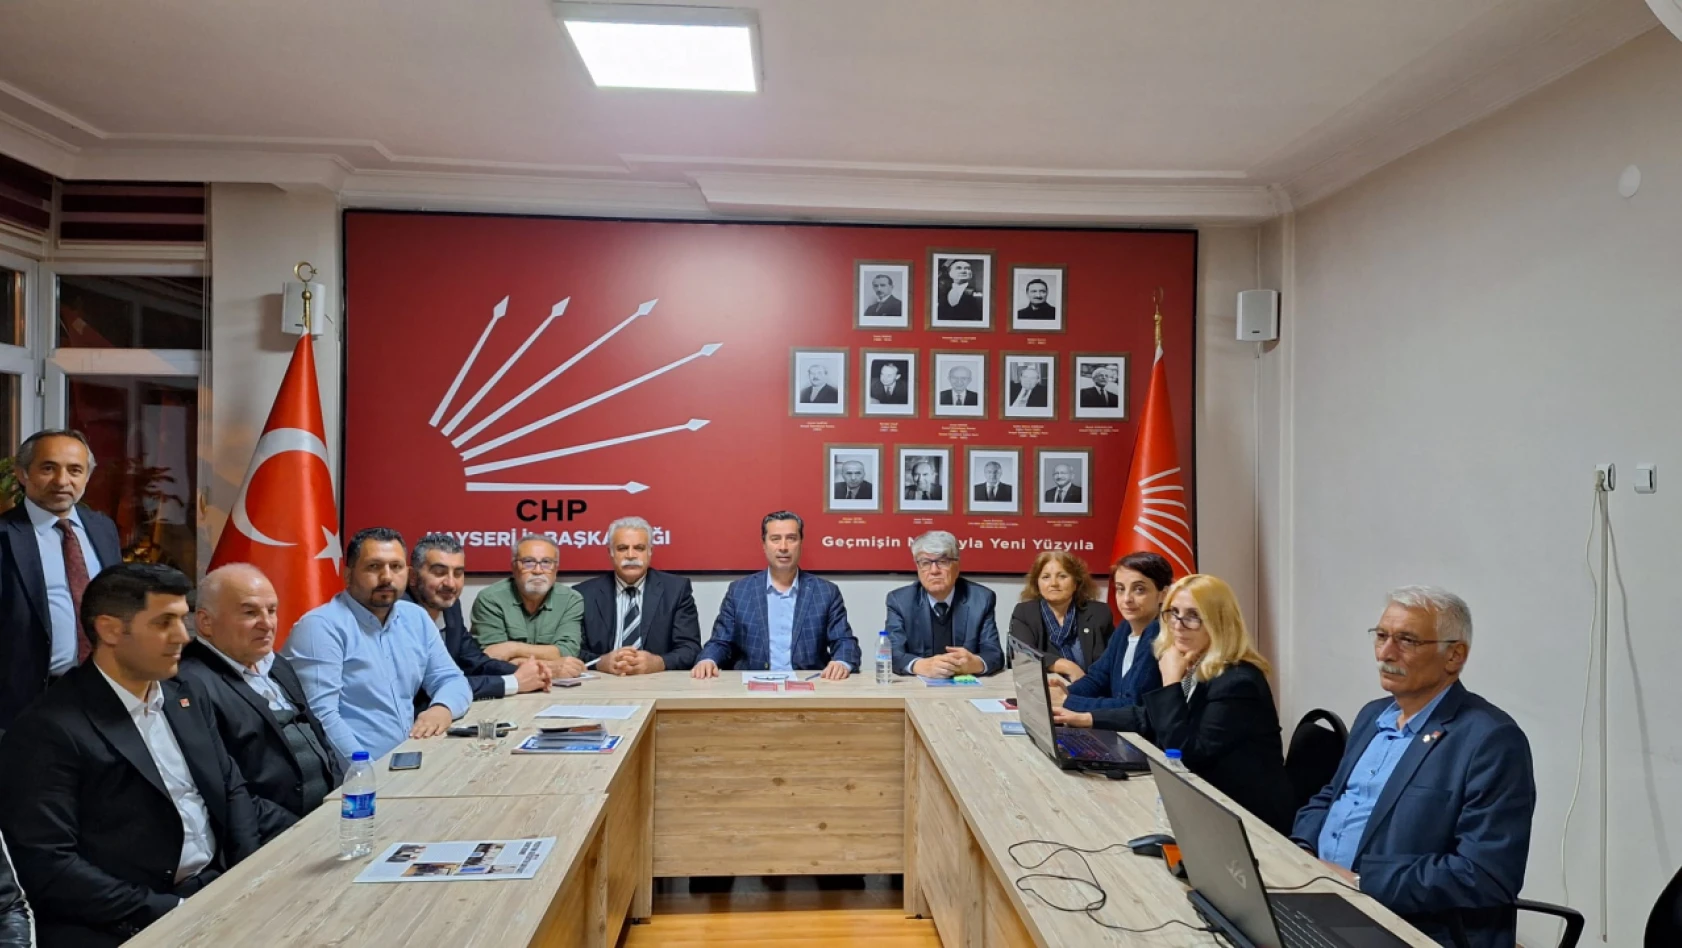 CHP Kayseri'den ilk açıklama geldi! Keskin, sonuçları nasıl değerlendi?